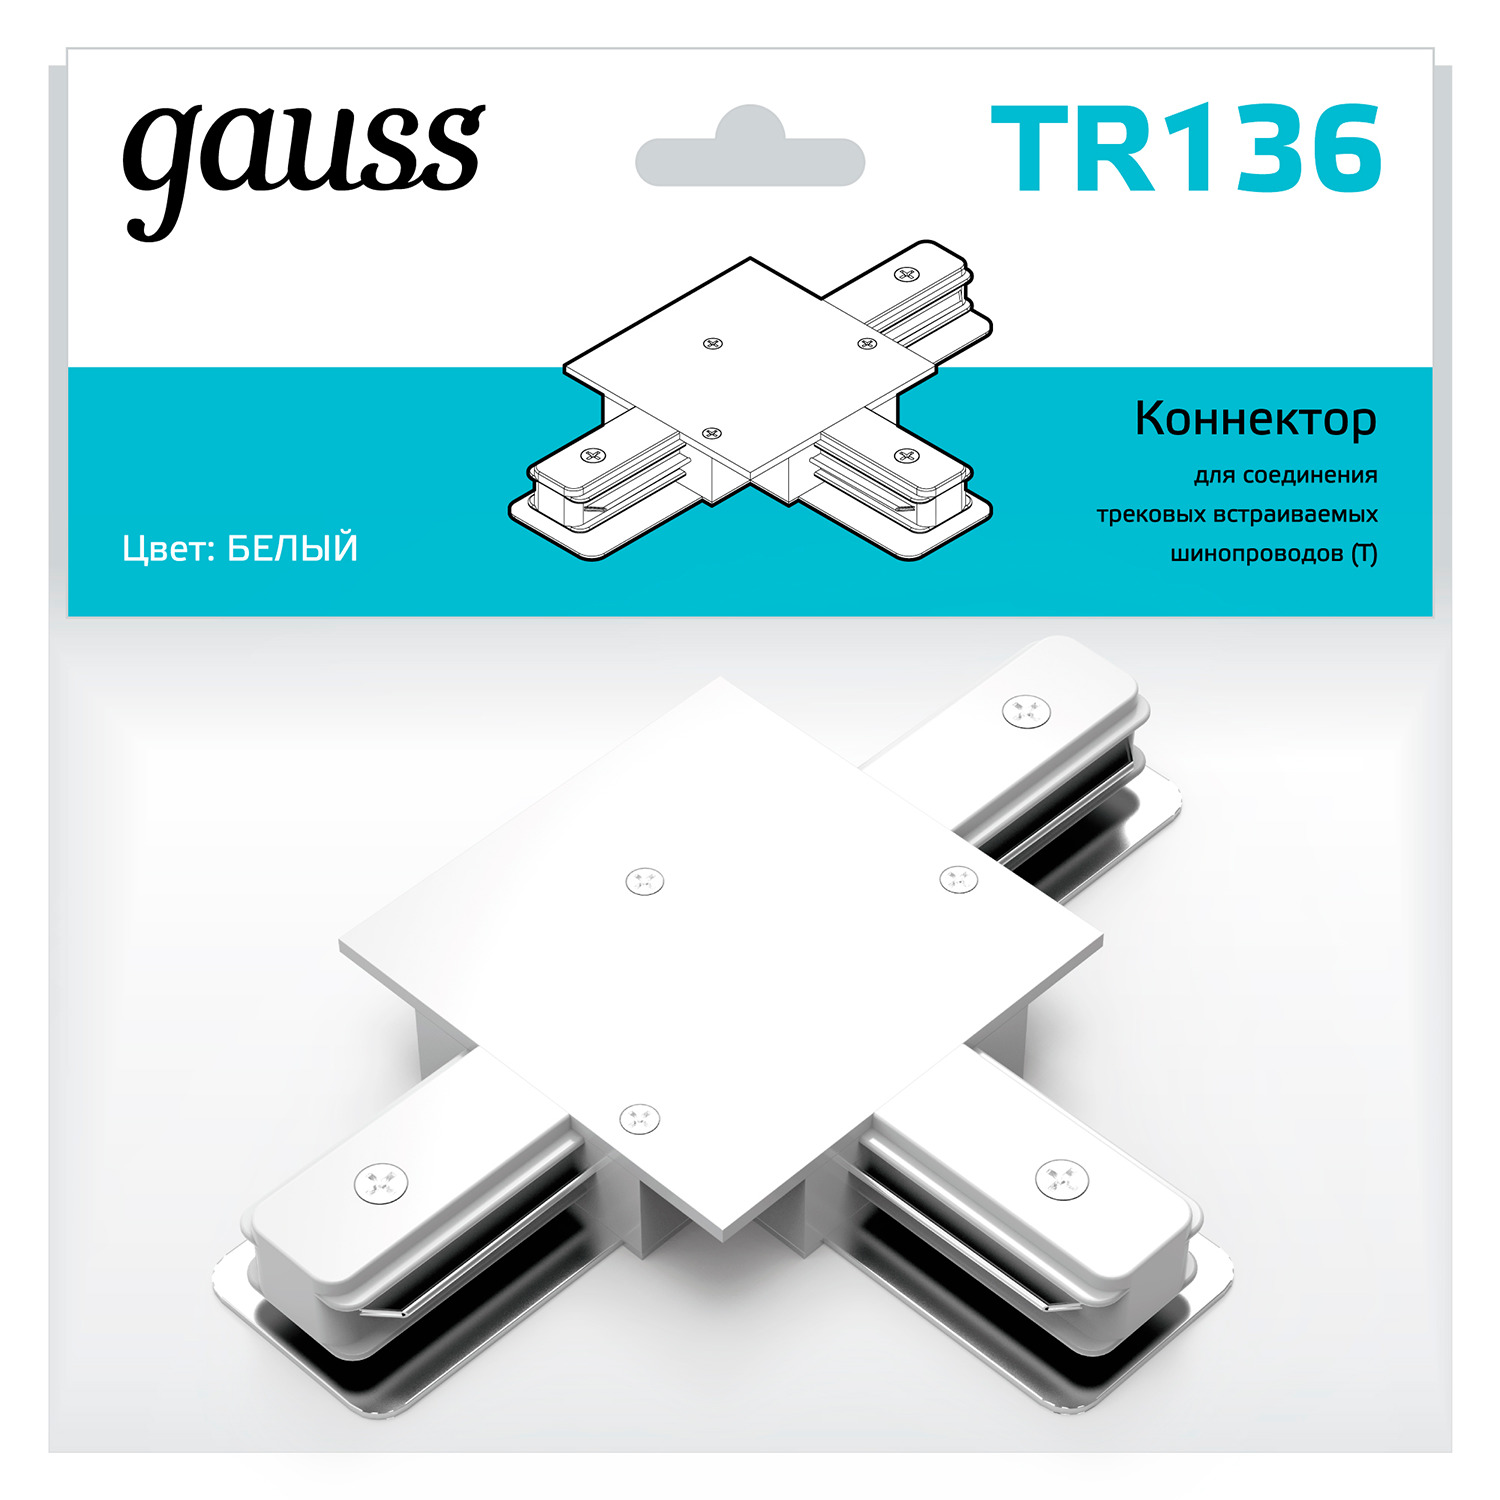 Коннектор Gauss для встраиваемых трековых шинопроводов (T) белый коннектор gauss для трековых шинопроводов t